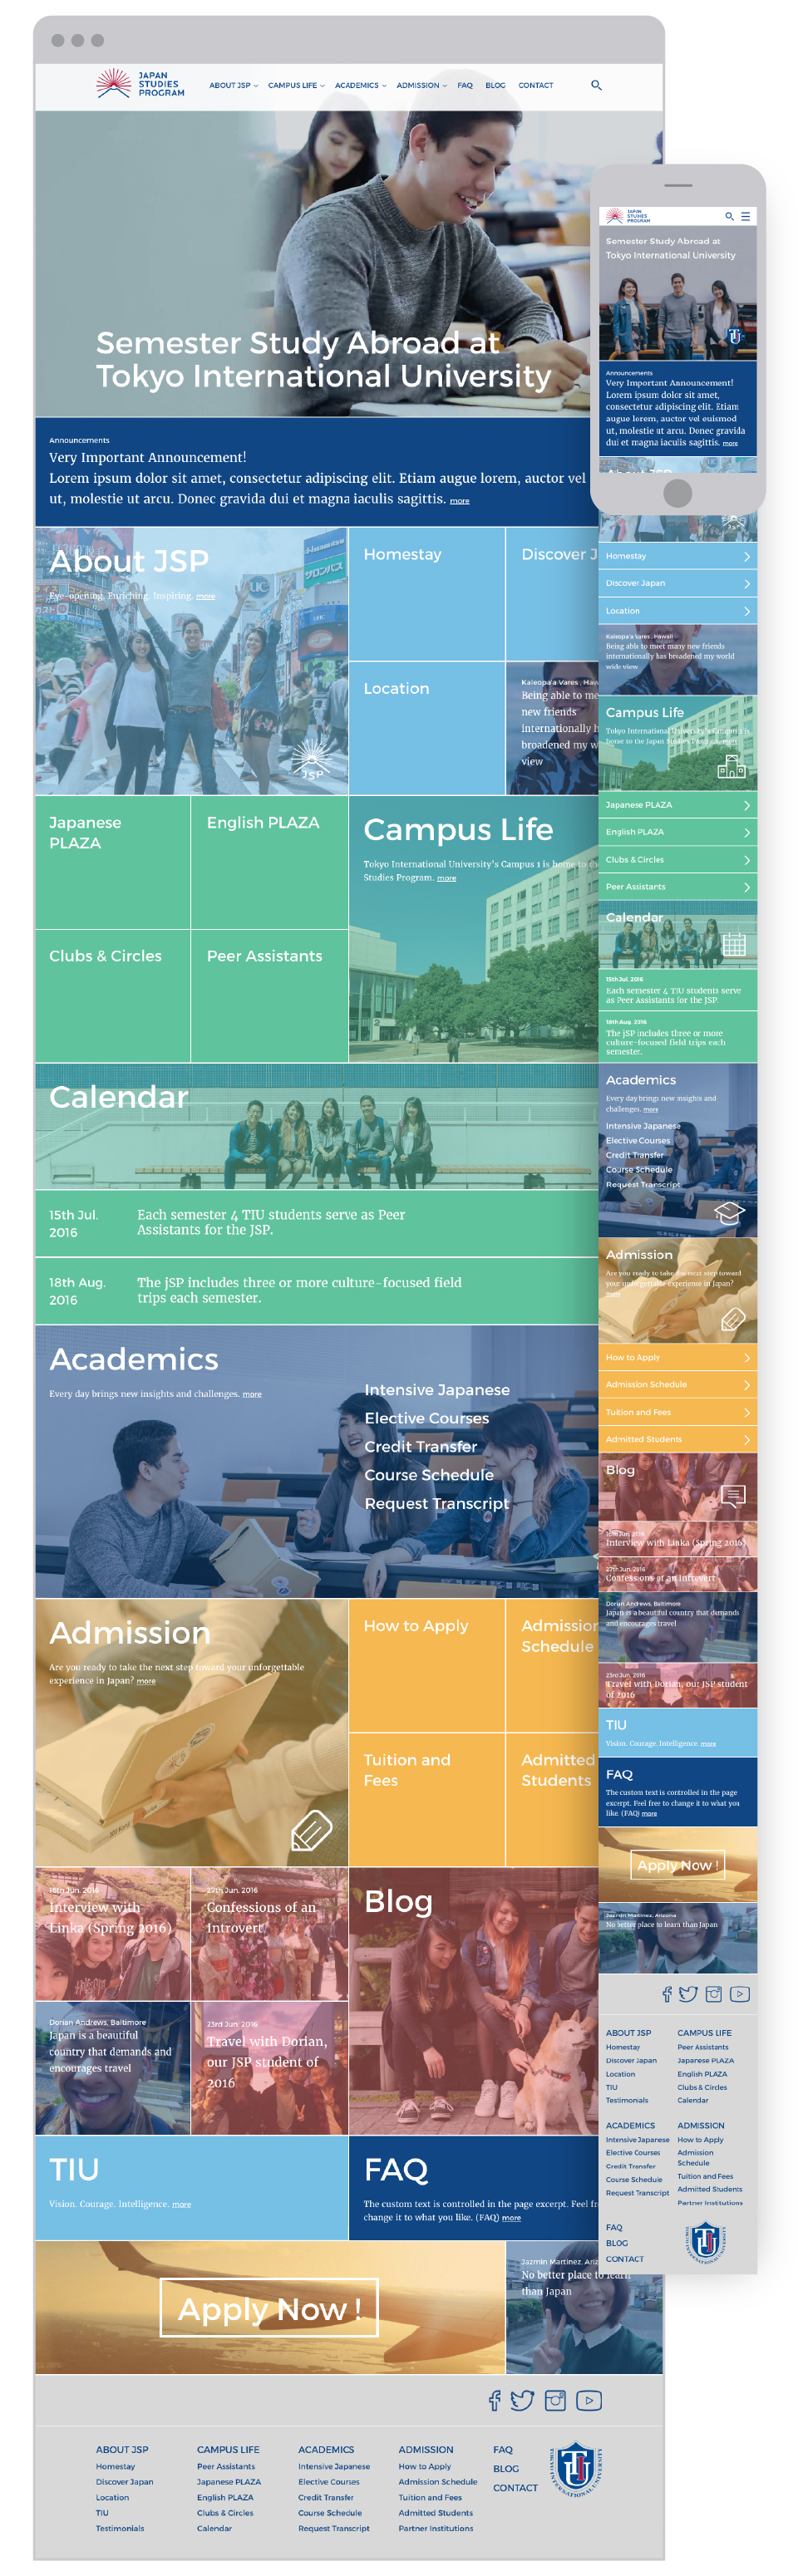 Japan Studies Program for Tokyo International University - Homepage of responsive website - UI UX